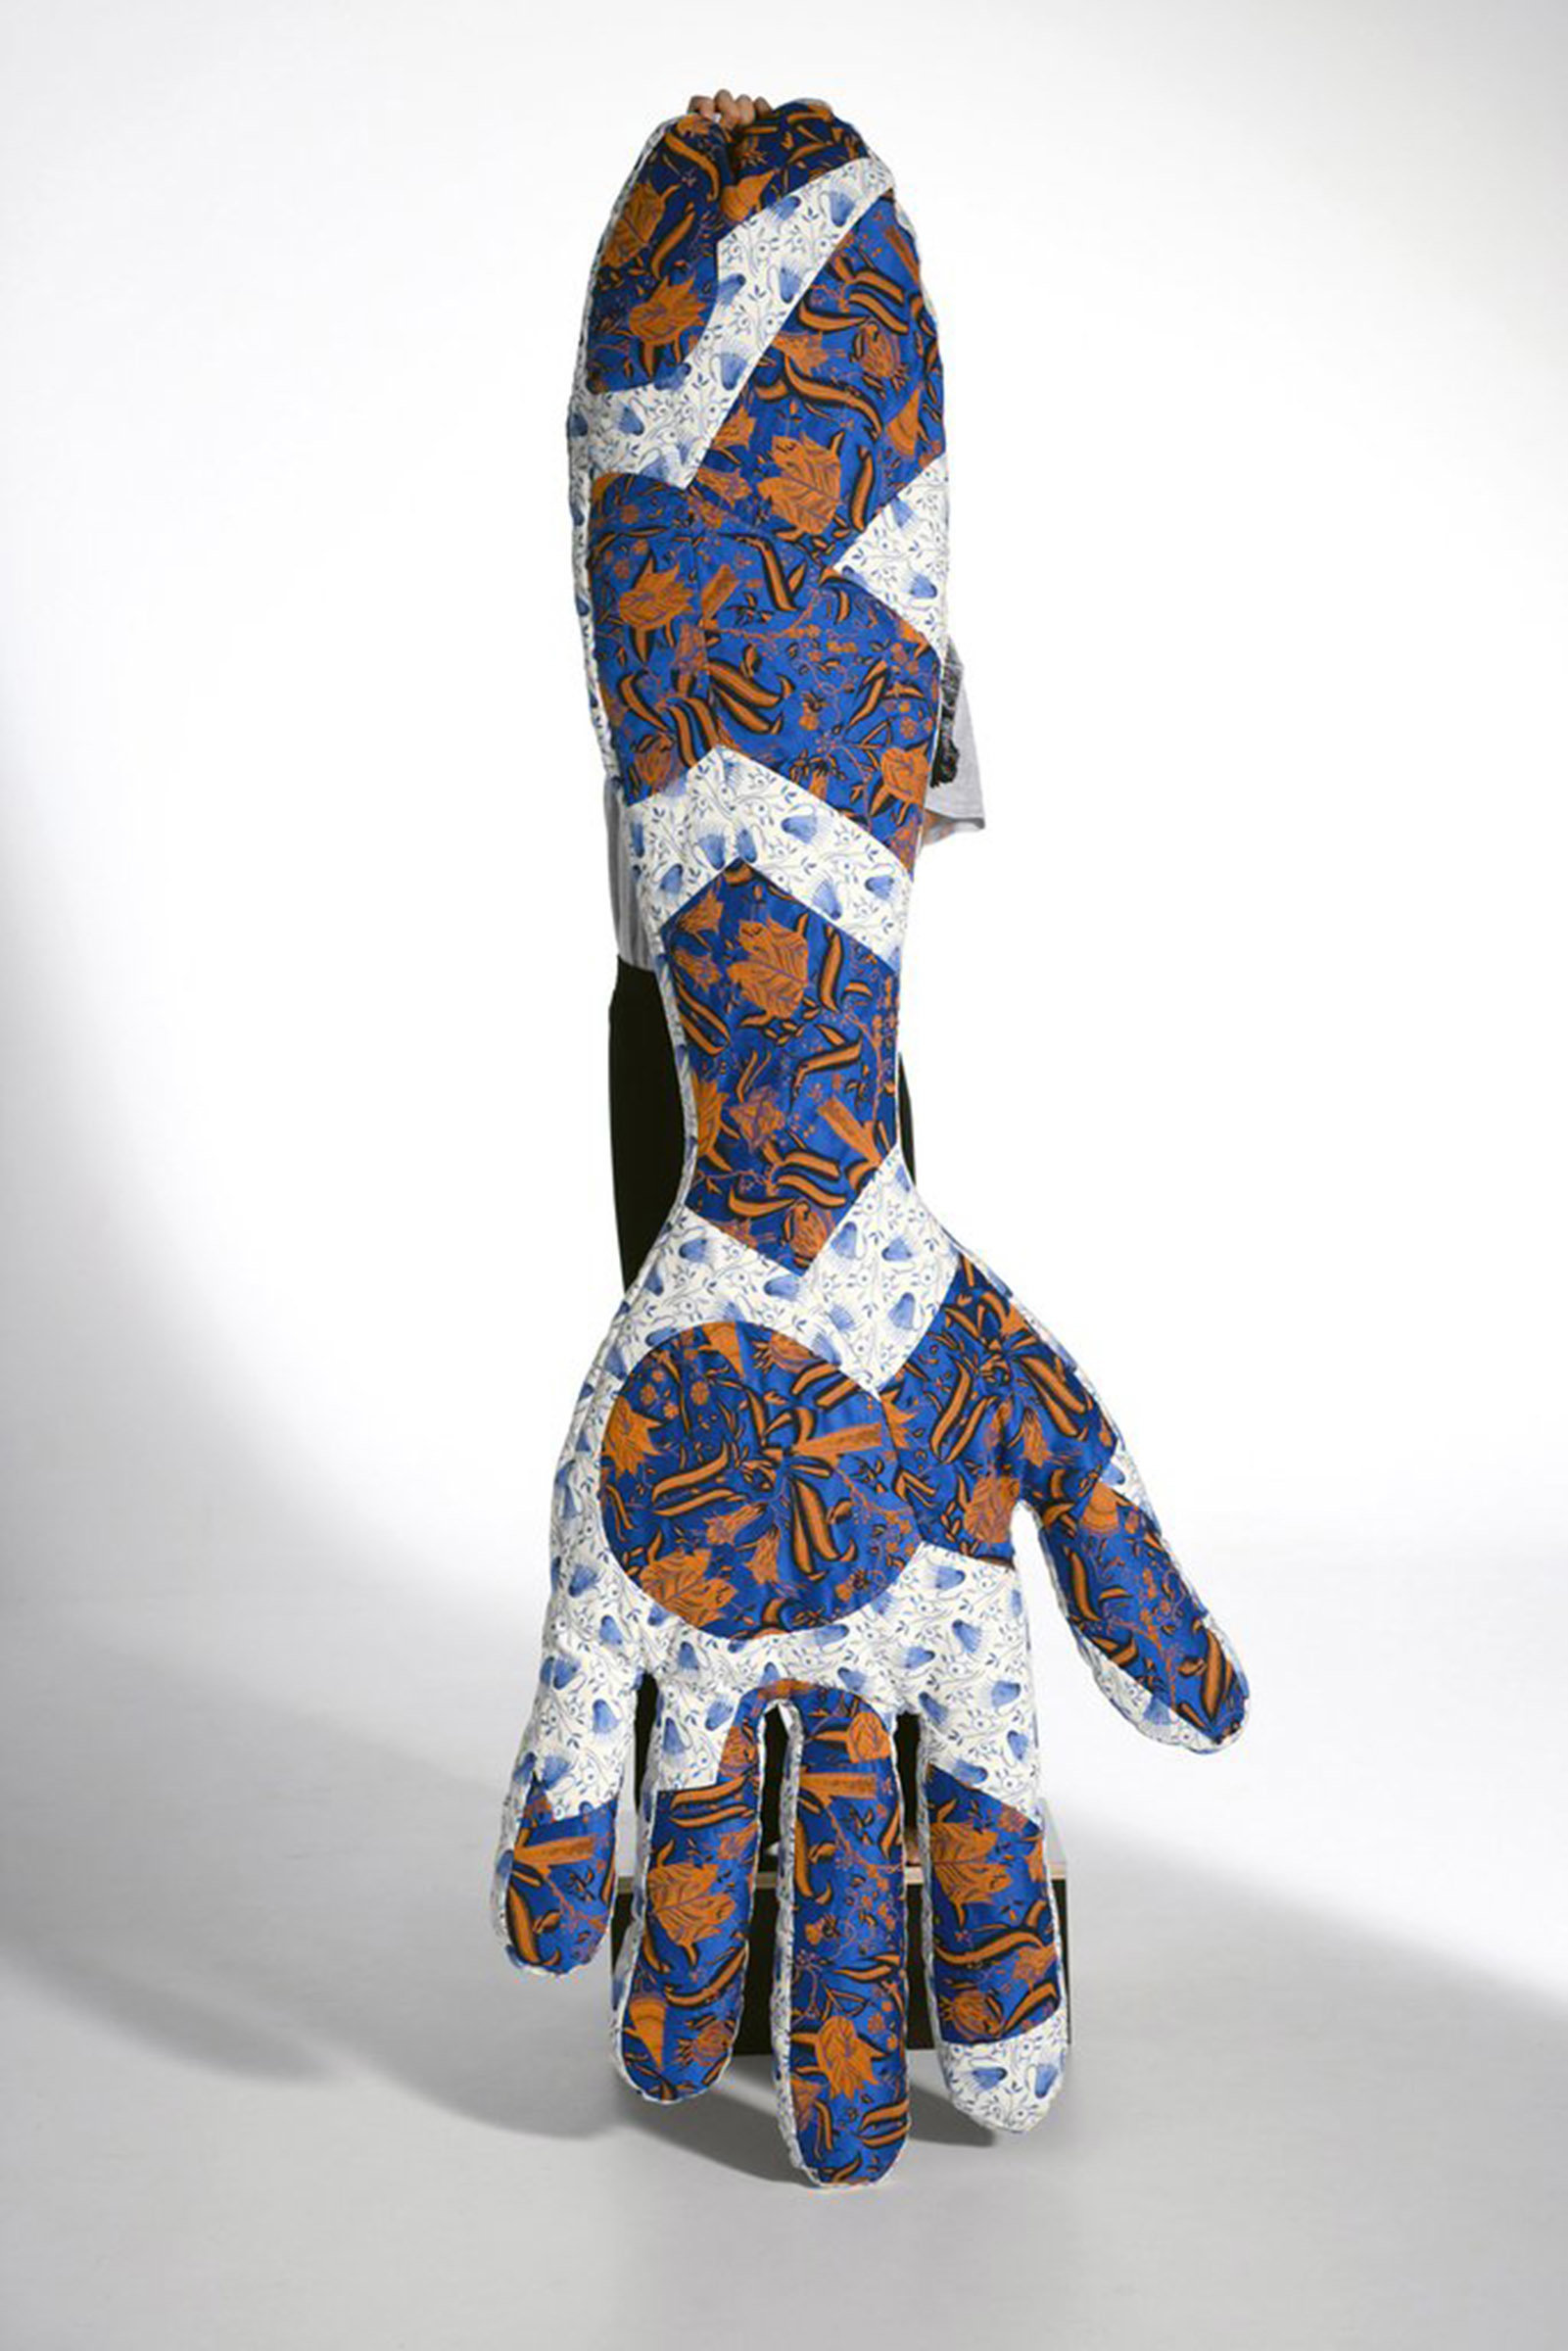 Bolster in Handform, mit hellblau, dunkelbau, organem Muster, wird von einer Person hochgehalten, diese vom Bolster verdeckt